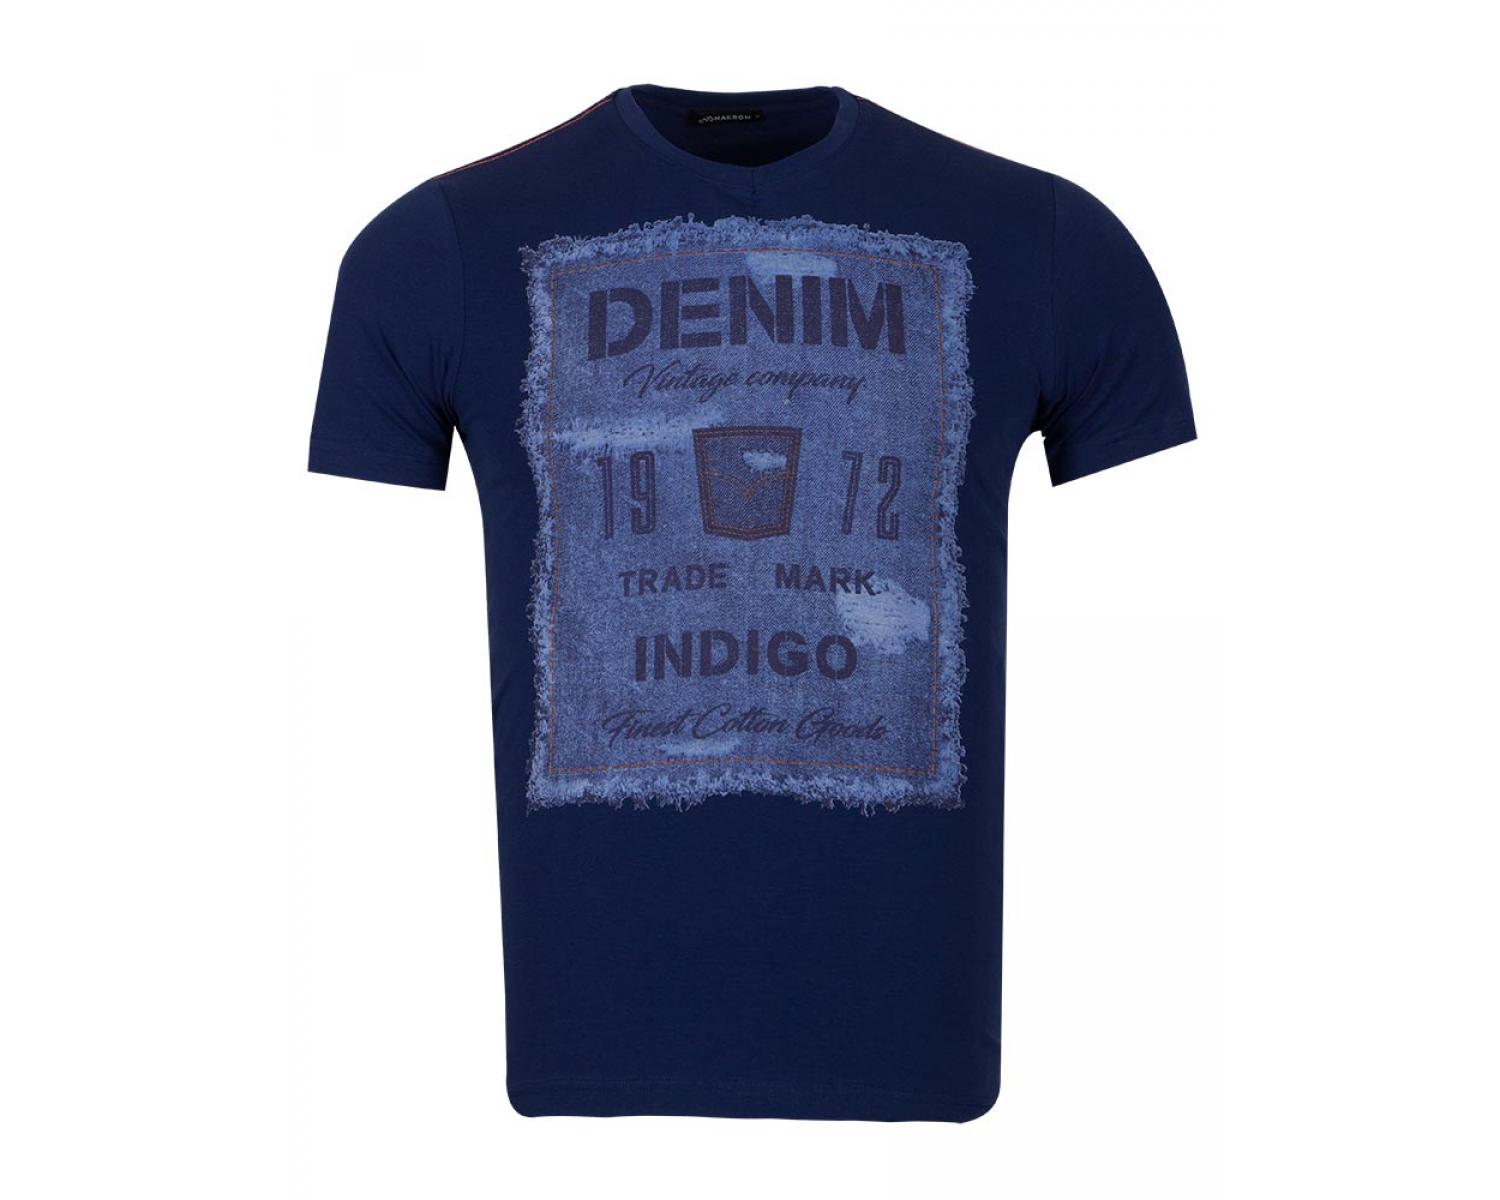 denim printed shirts